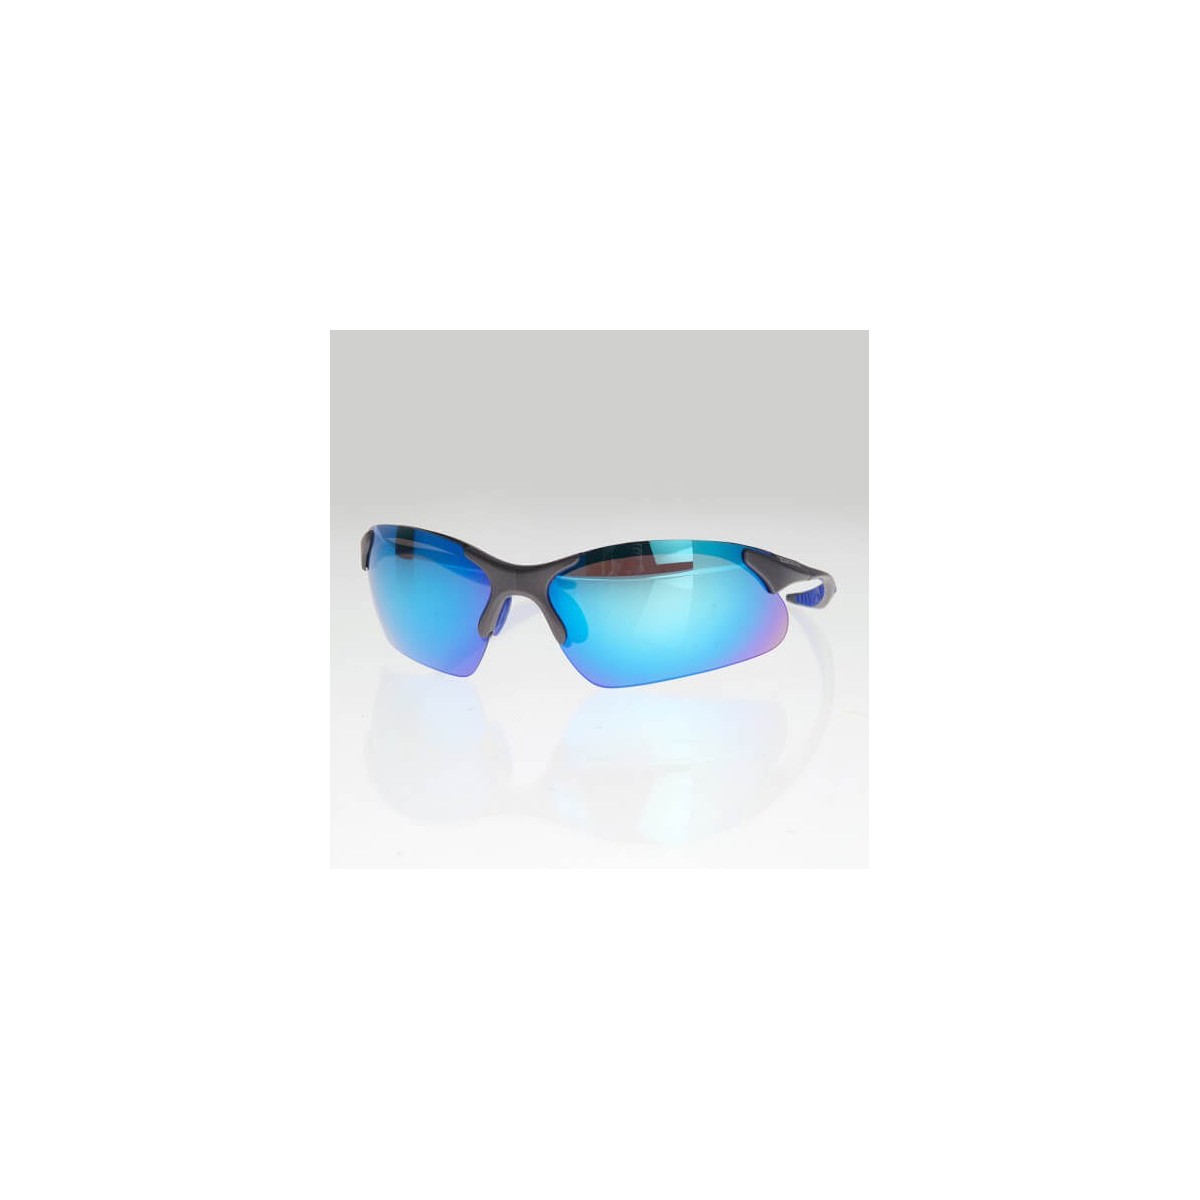 Gafas de sol Zone3 azul